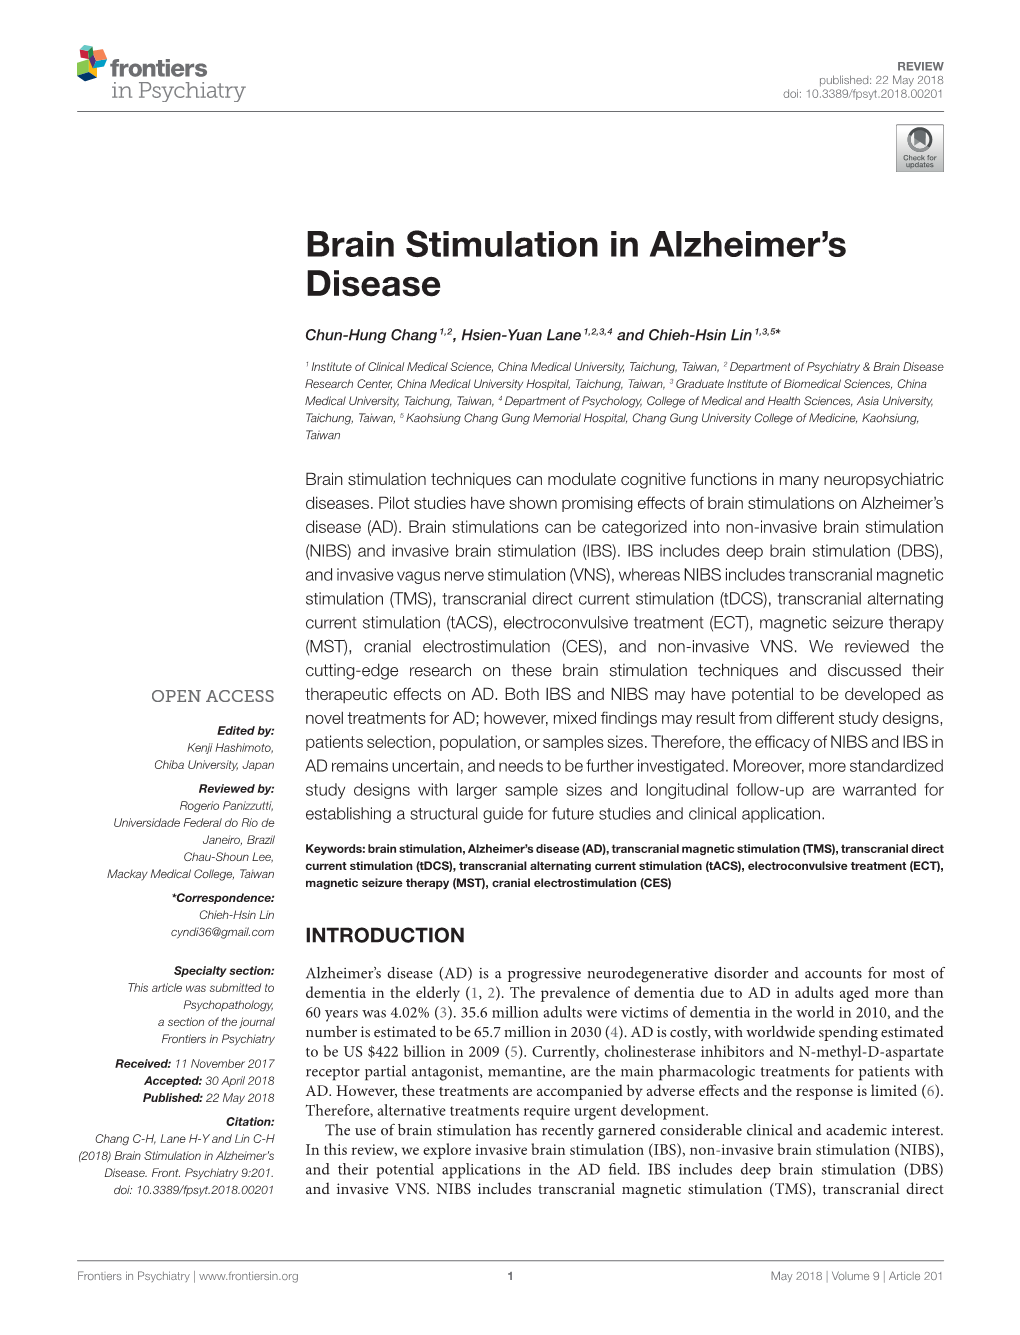 Brain Stimulation in Alzheimer's Disease